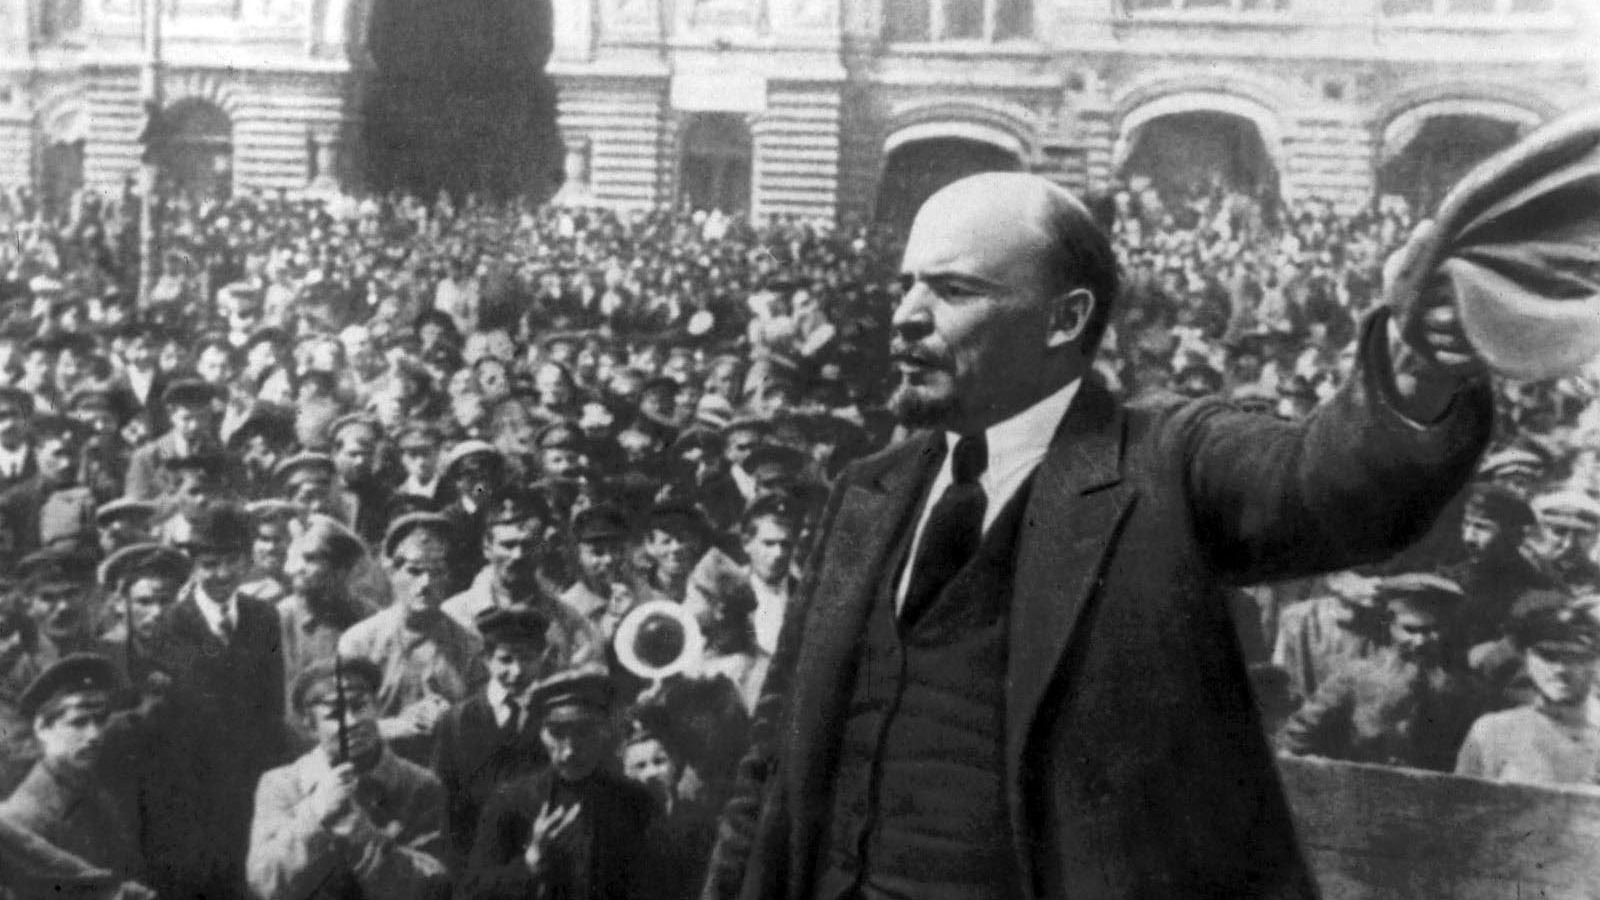 Résultat de recherche d'images pour "révolution russe 7 novembre 1917 Images"